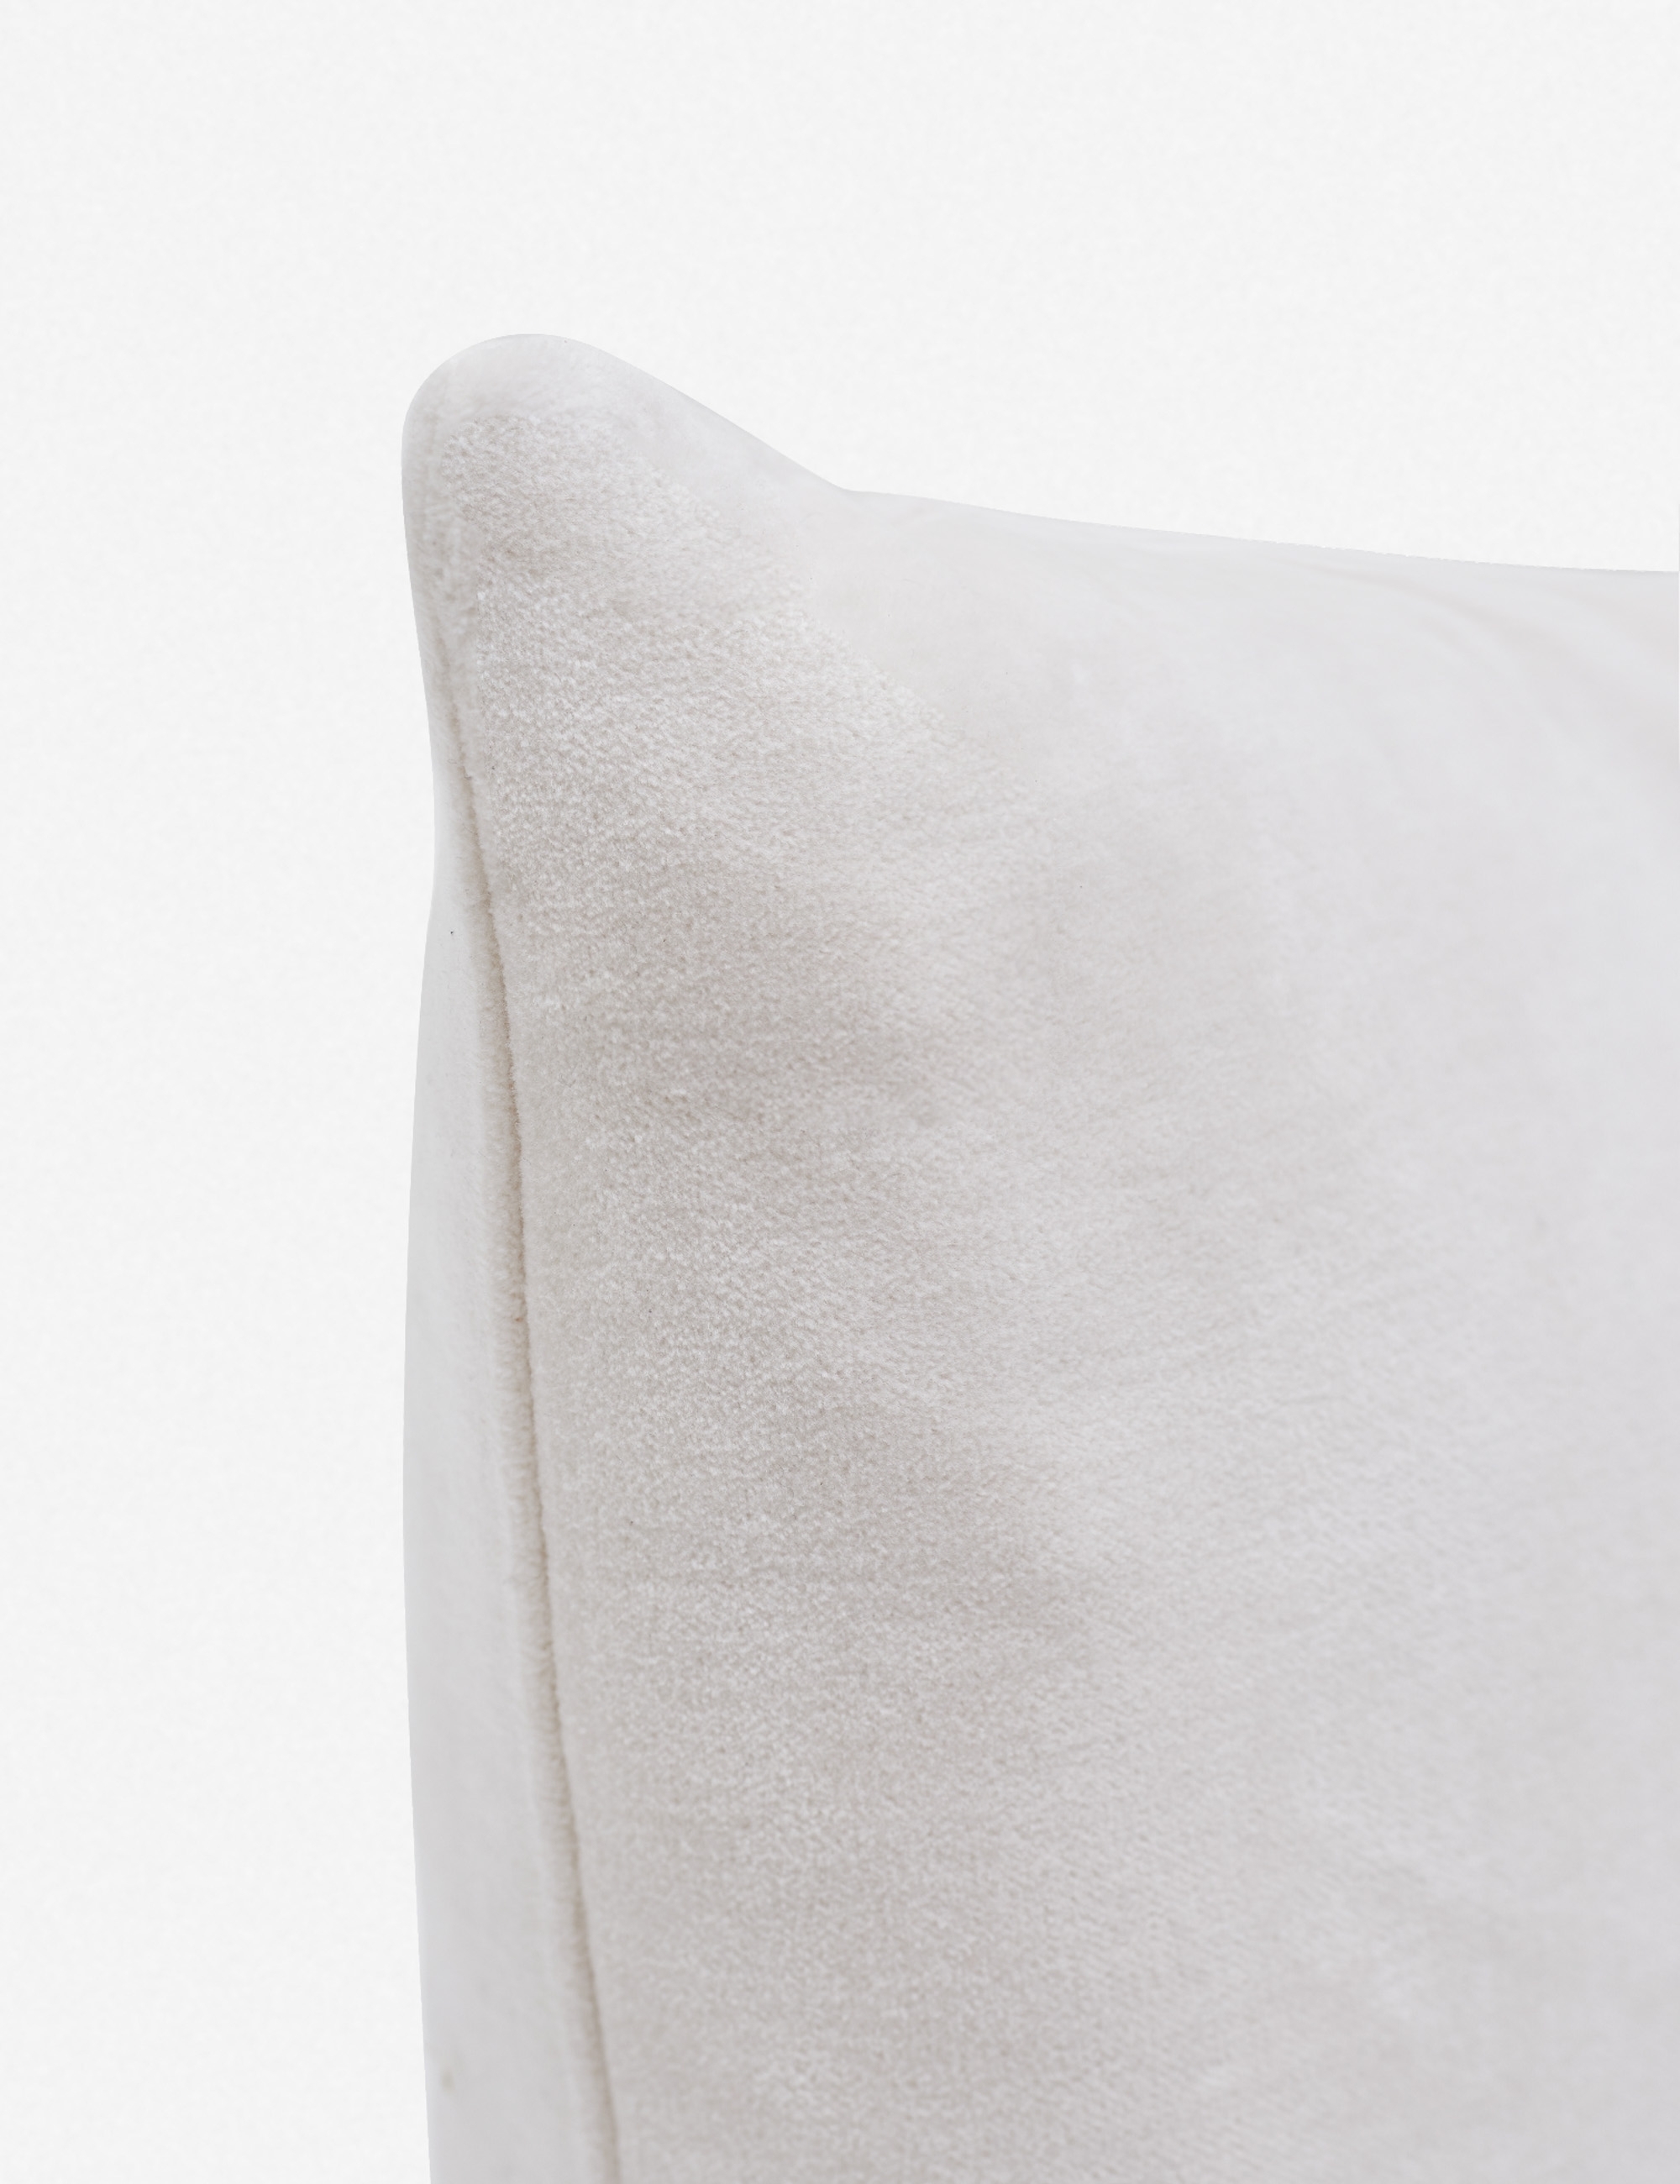 Charlotte Velvet Lumbar Pillow, Oyster, 20" x 13" - Image 1